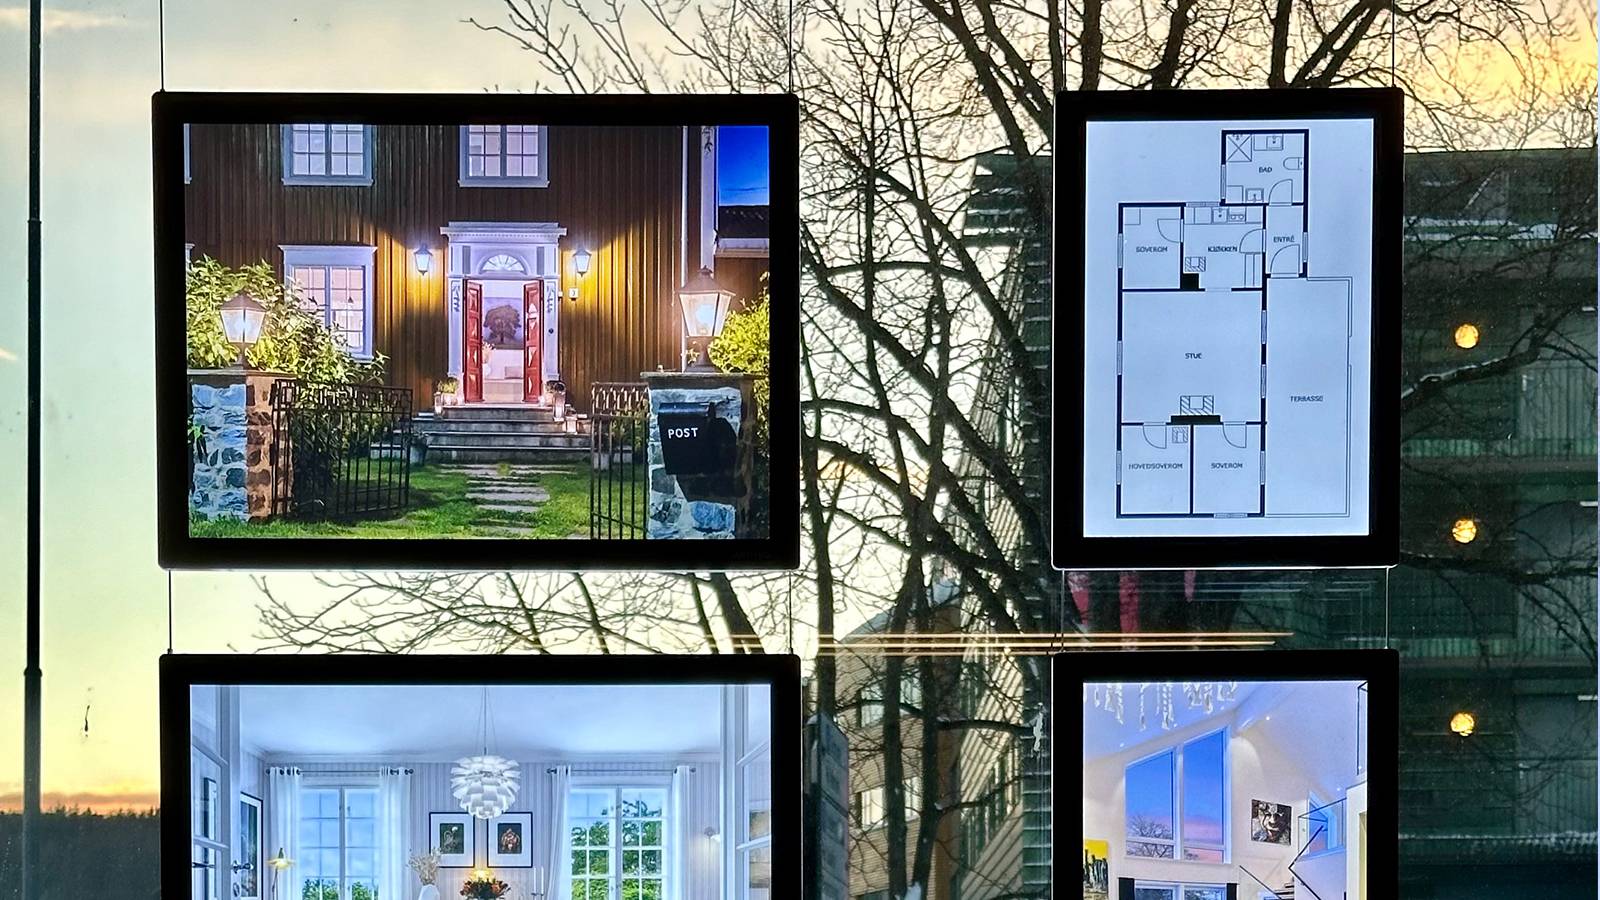 FR Panneaux LED dans une vitrine remplie d'offres de logement Agence immobilière